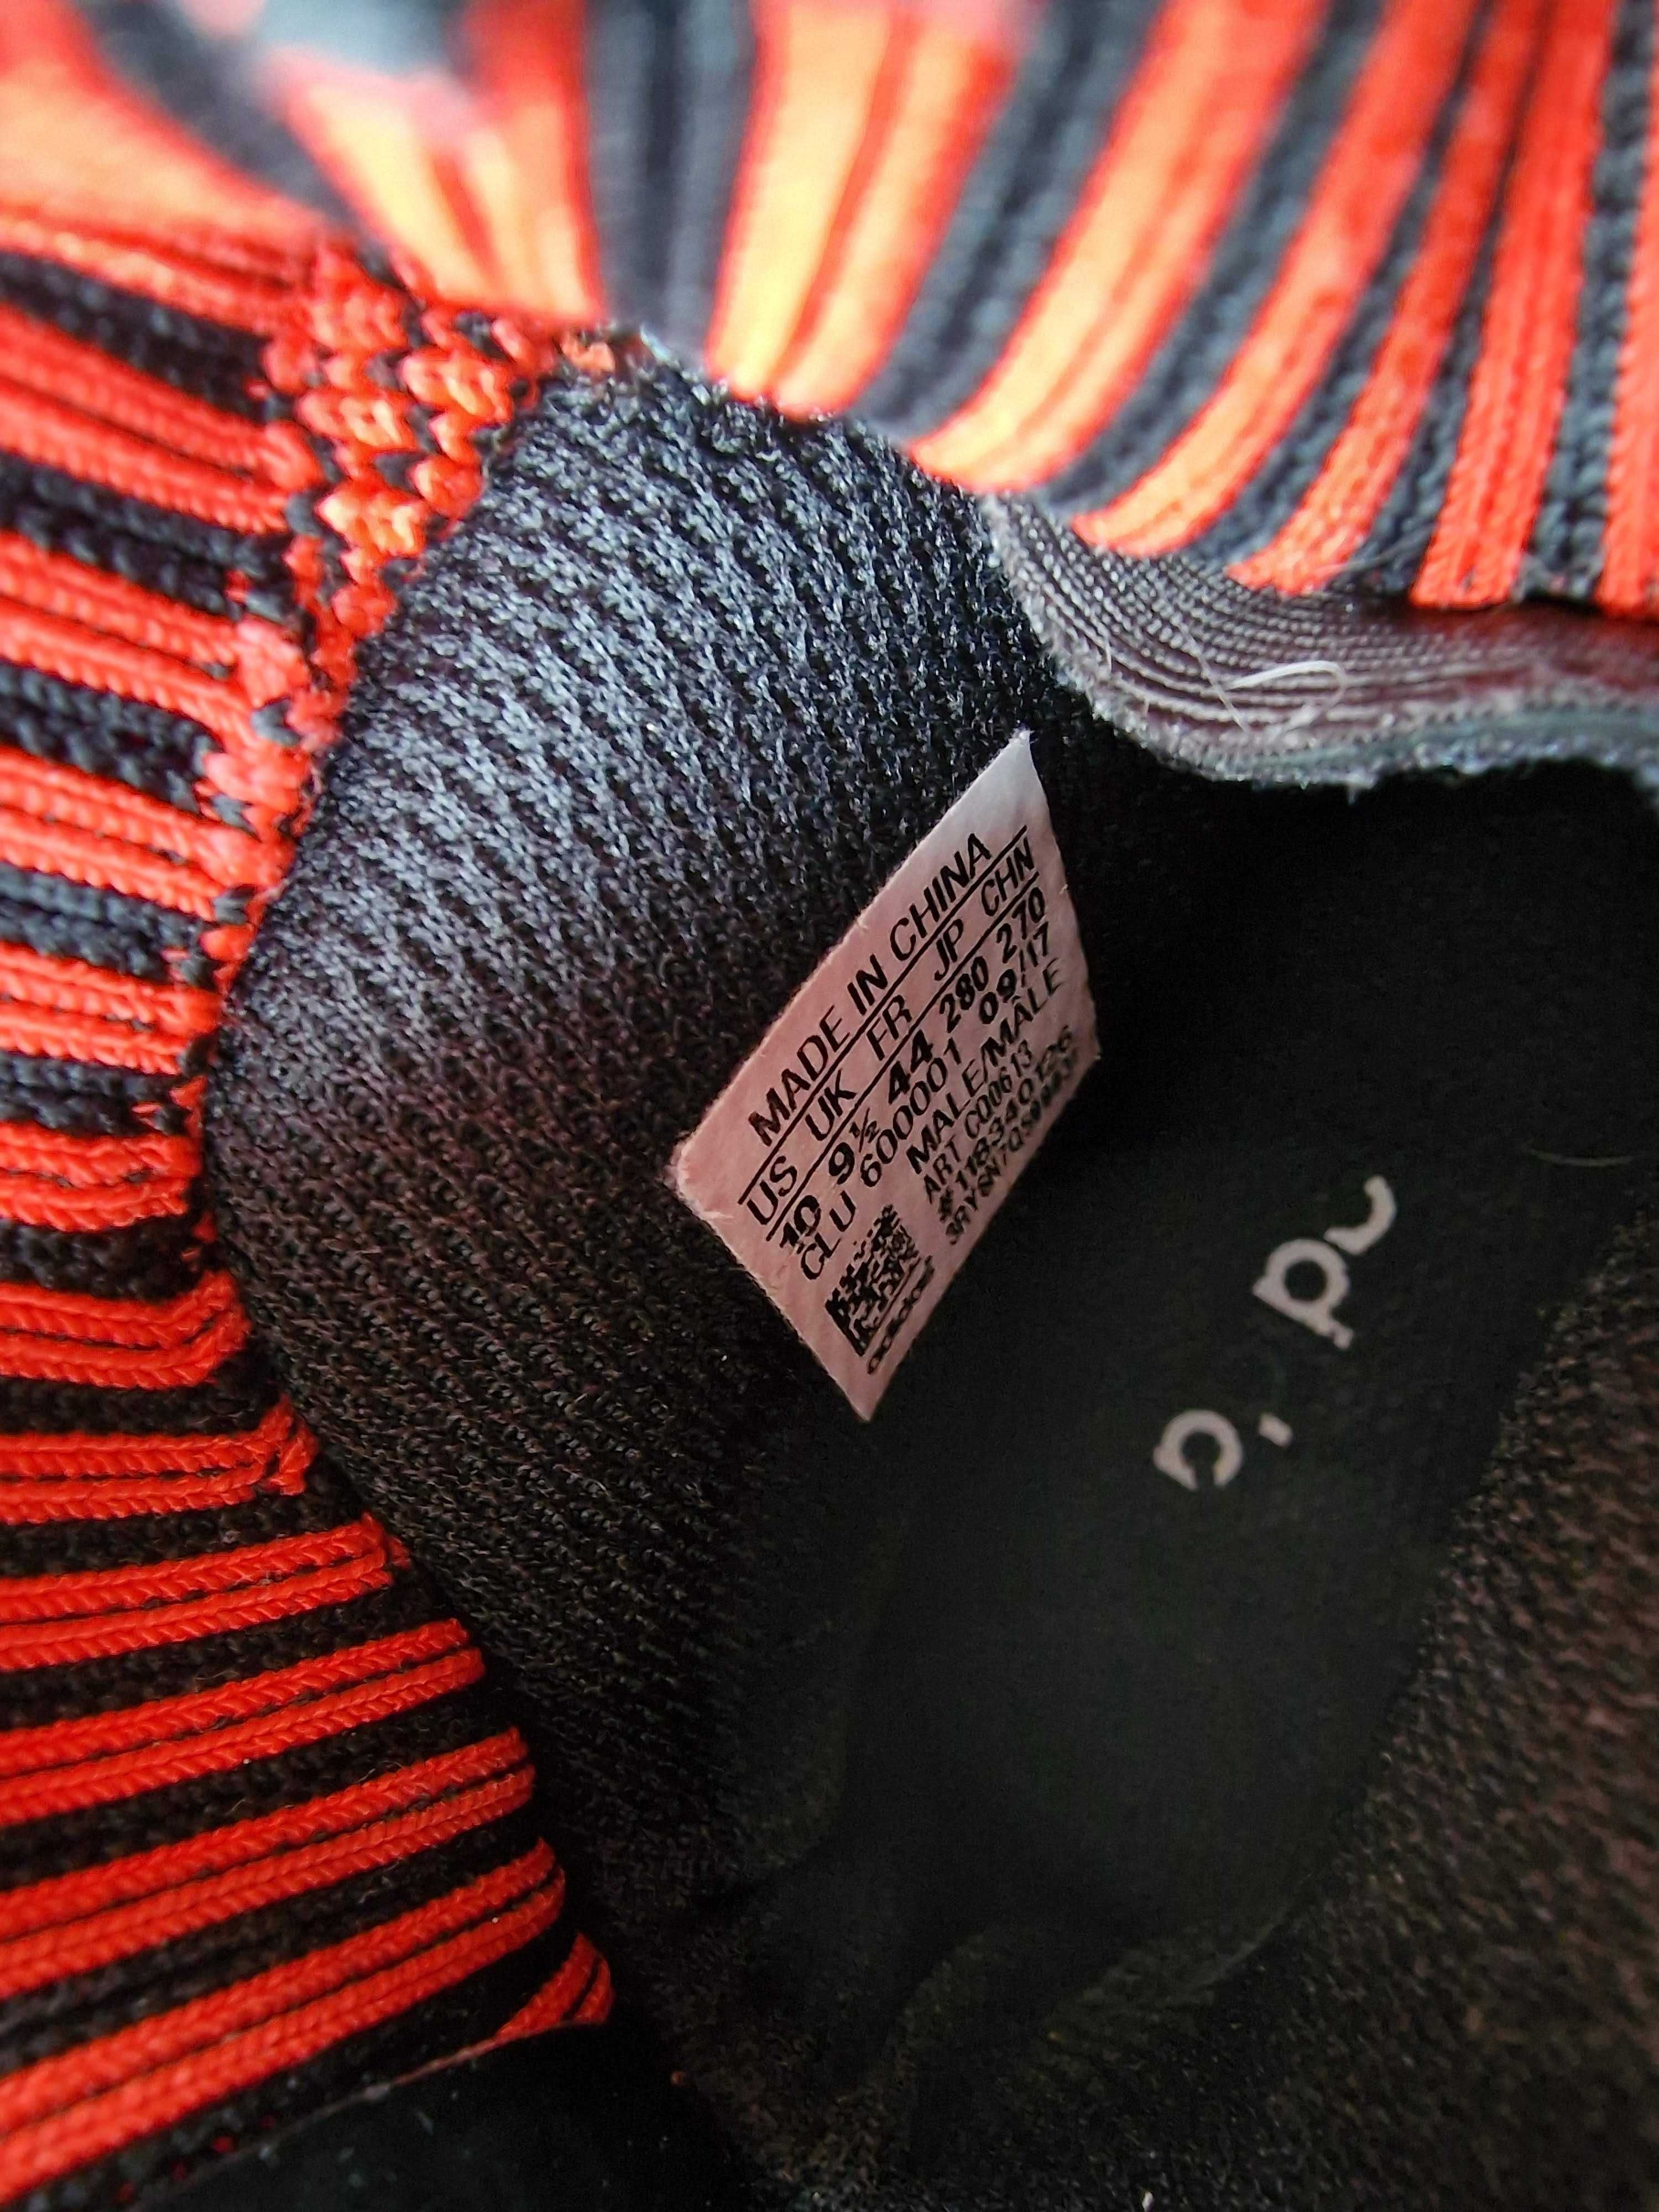 Buty do koszykówki Adidas ULTRABOOST 20 czerwone r 44 - mało używane